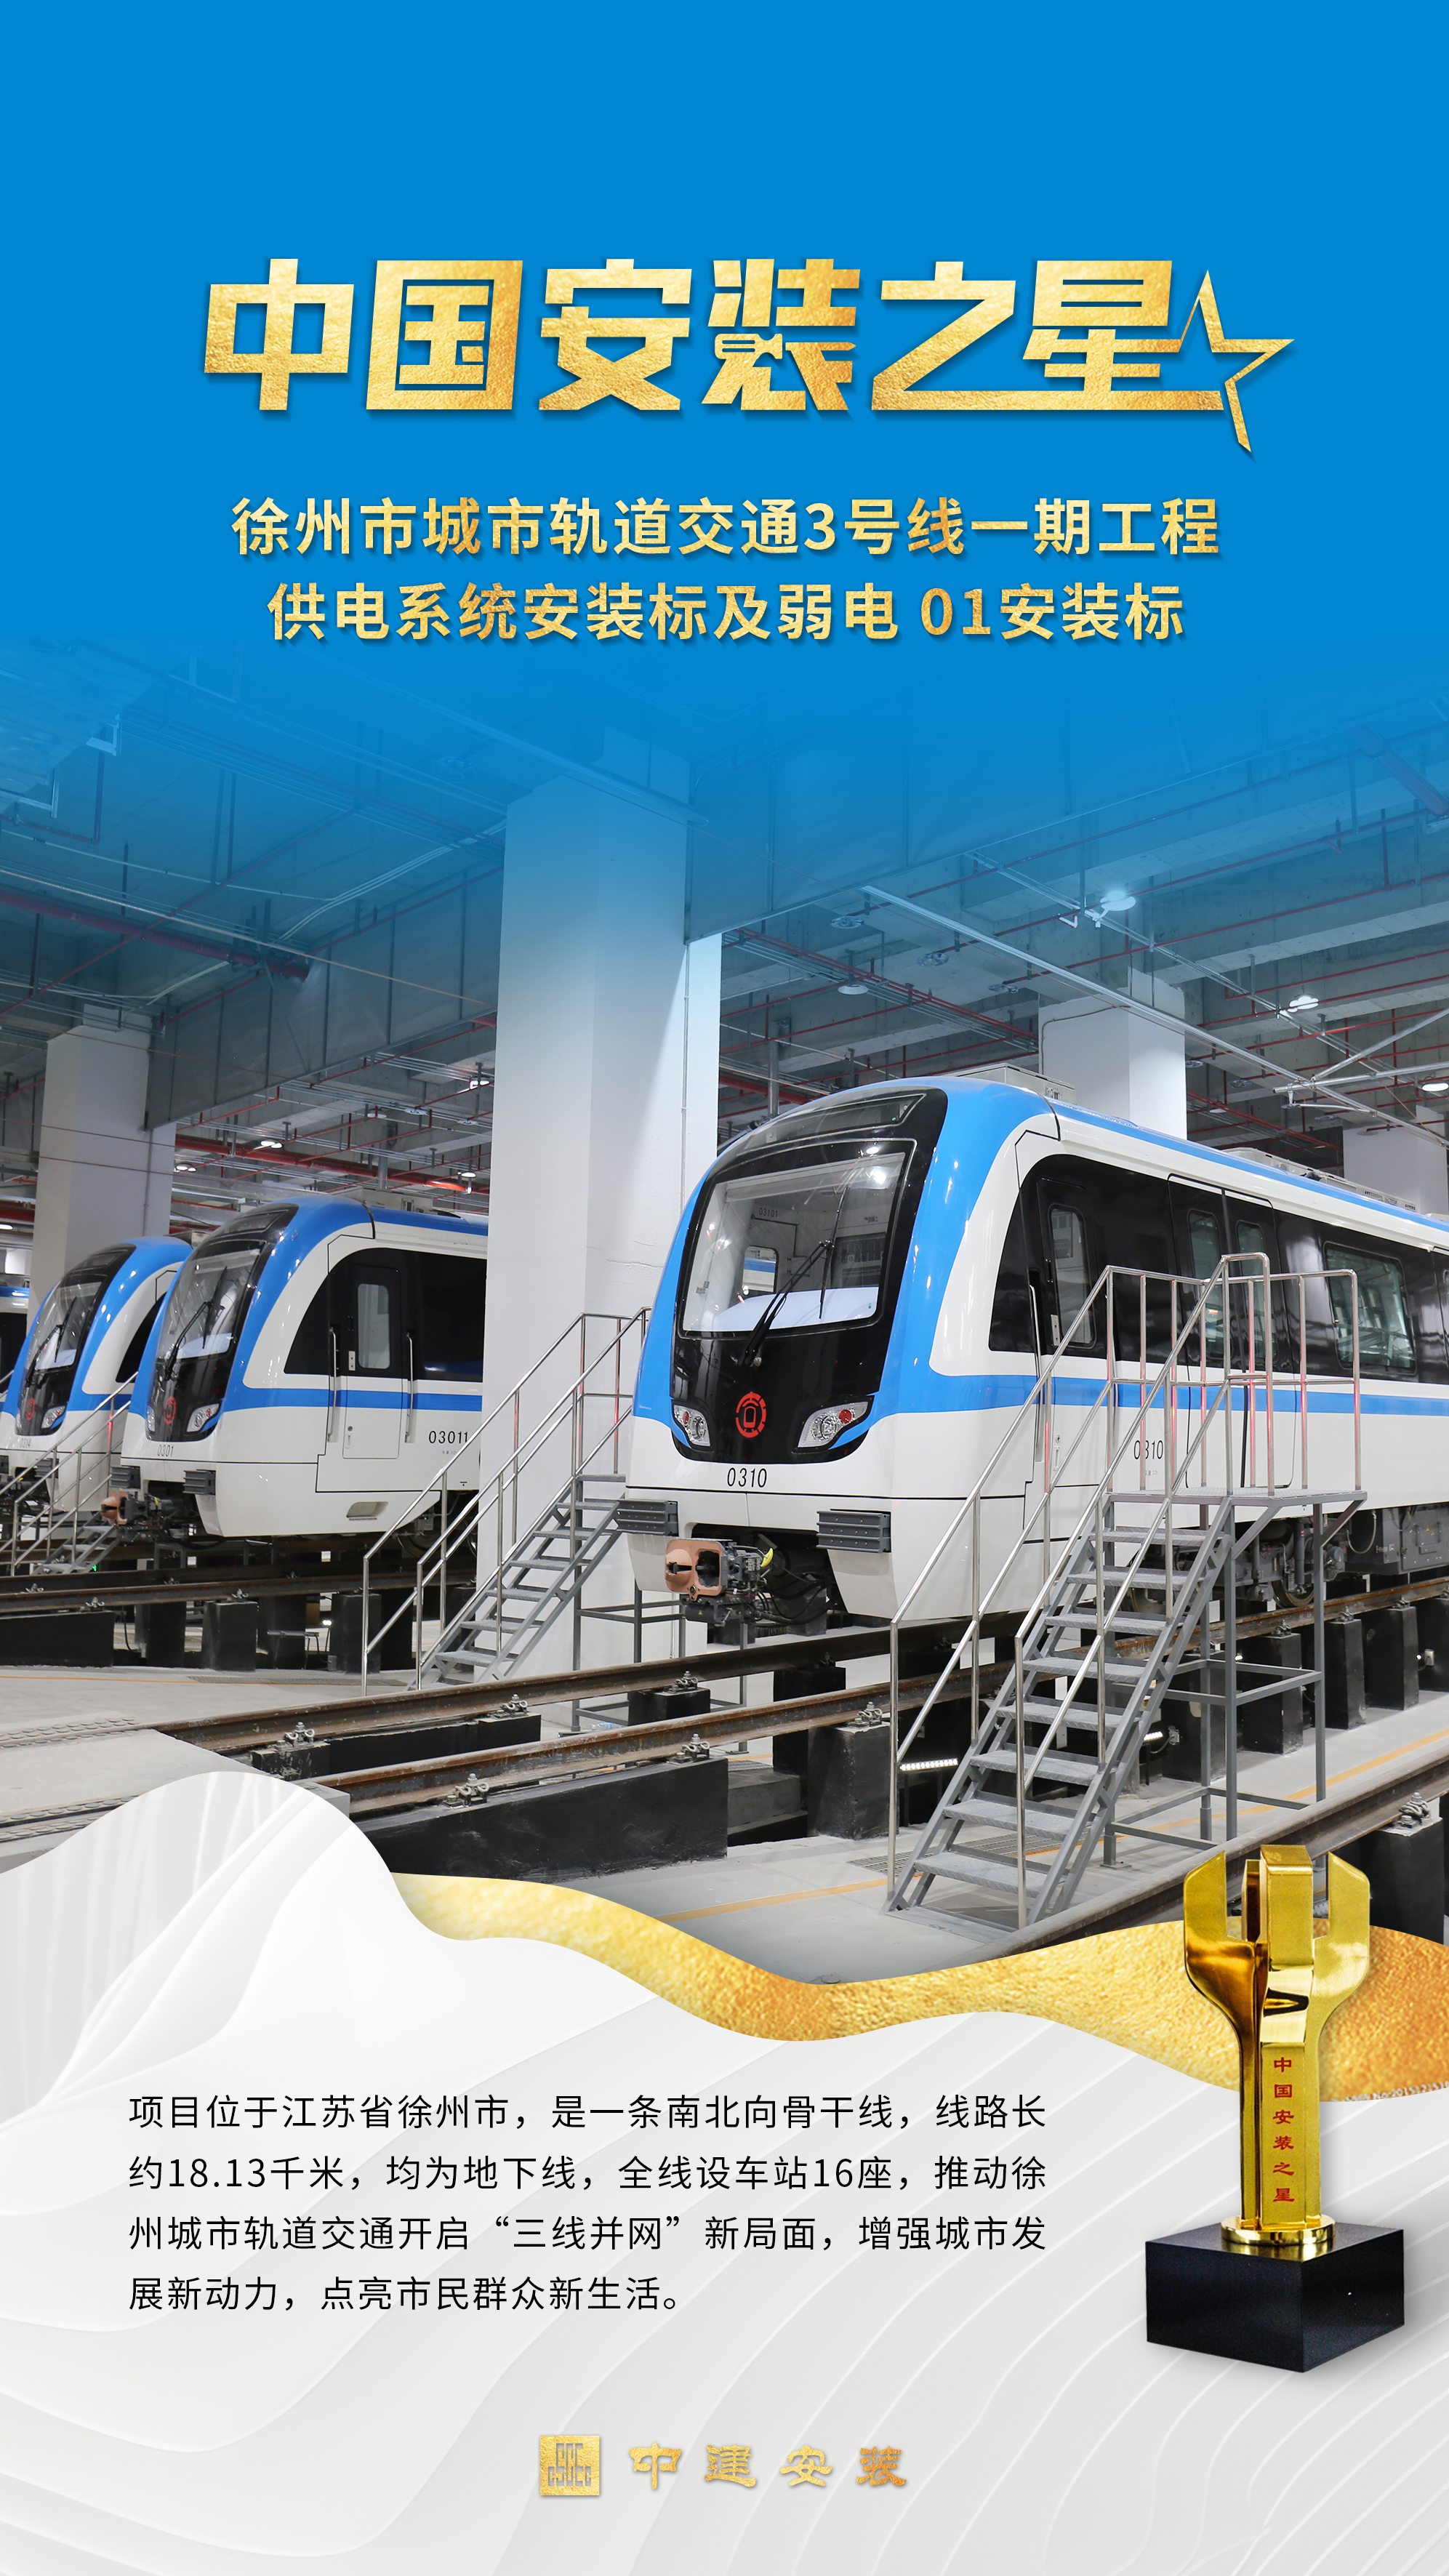 徐州地铁3号线一期工程站后总承包项目.jpg